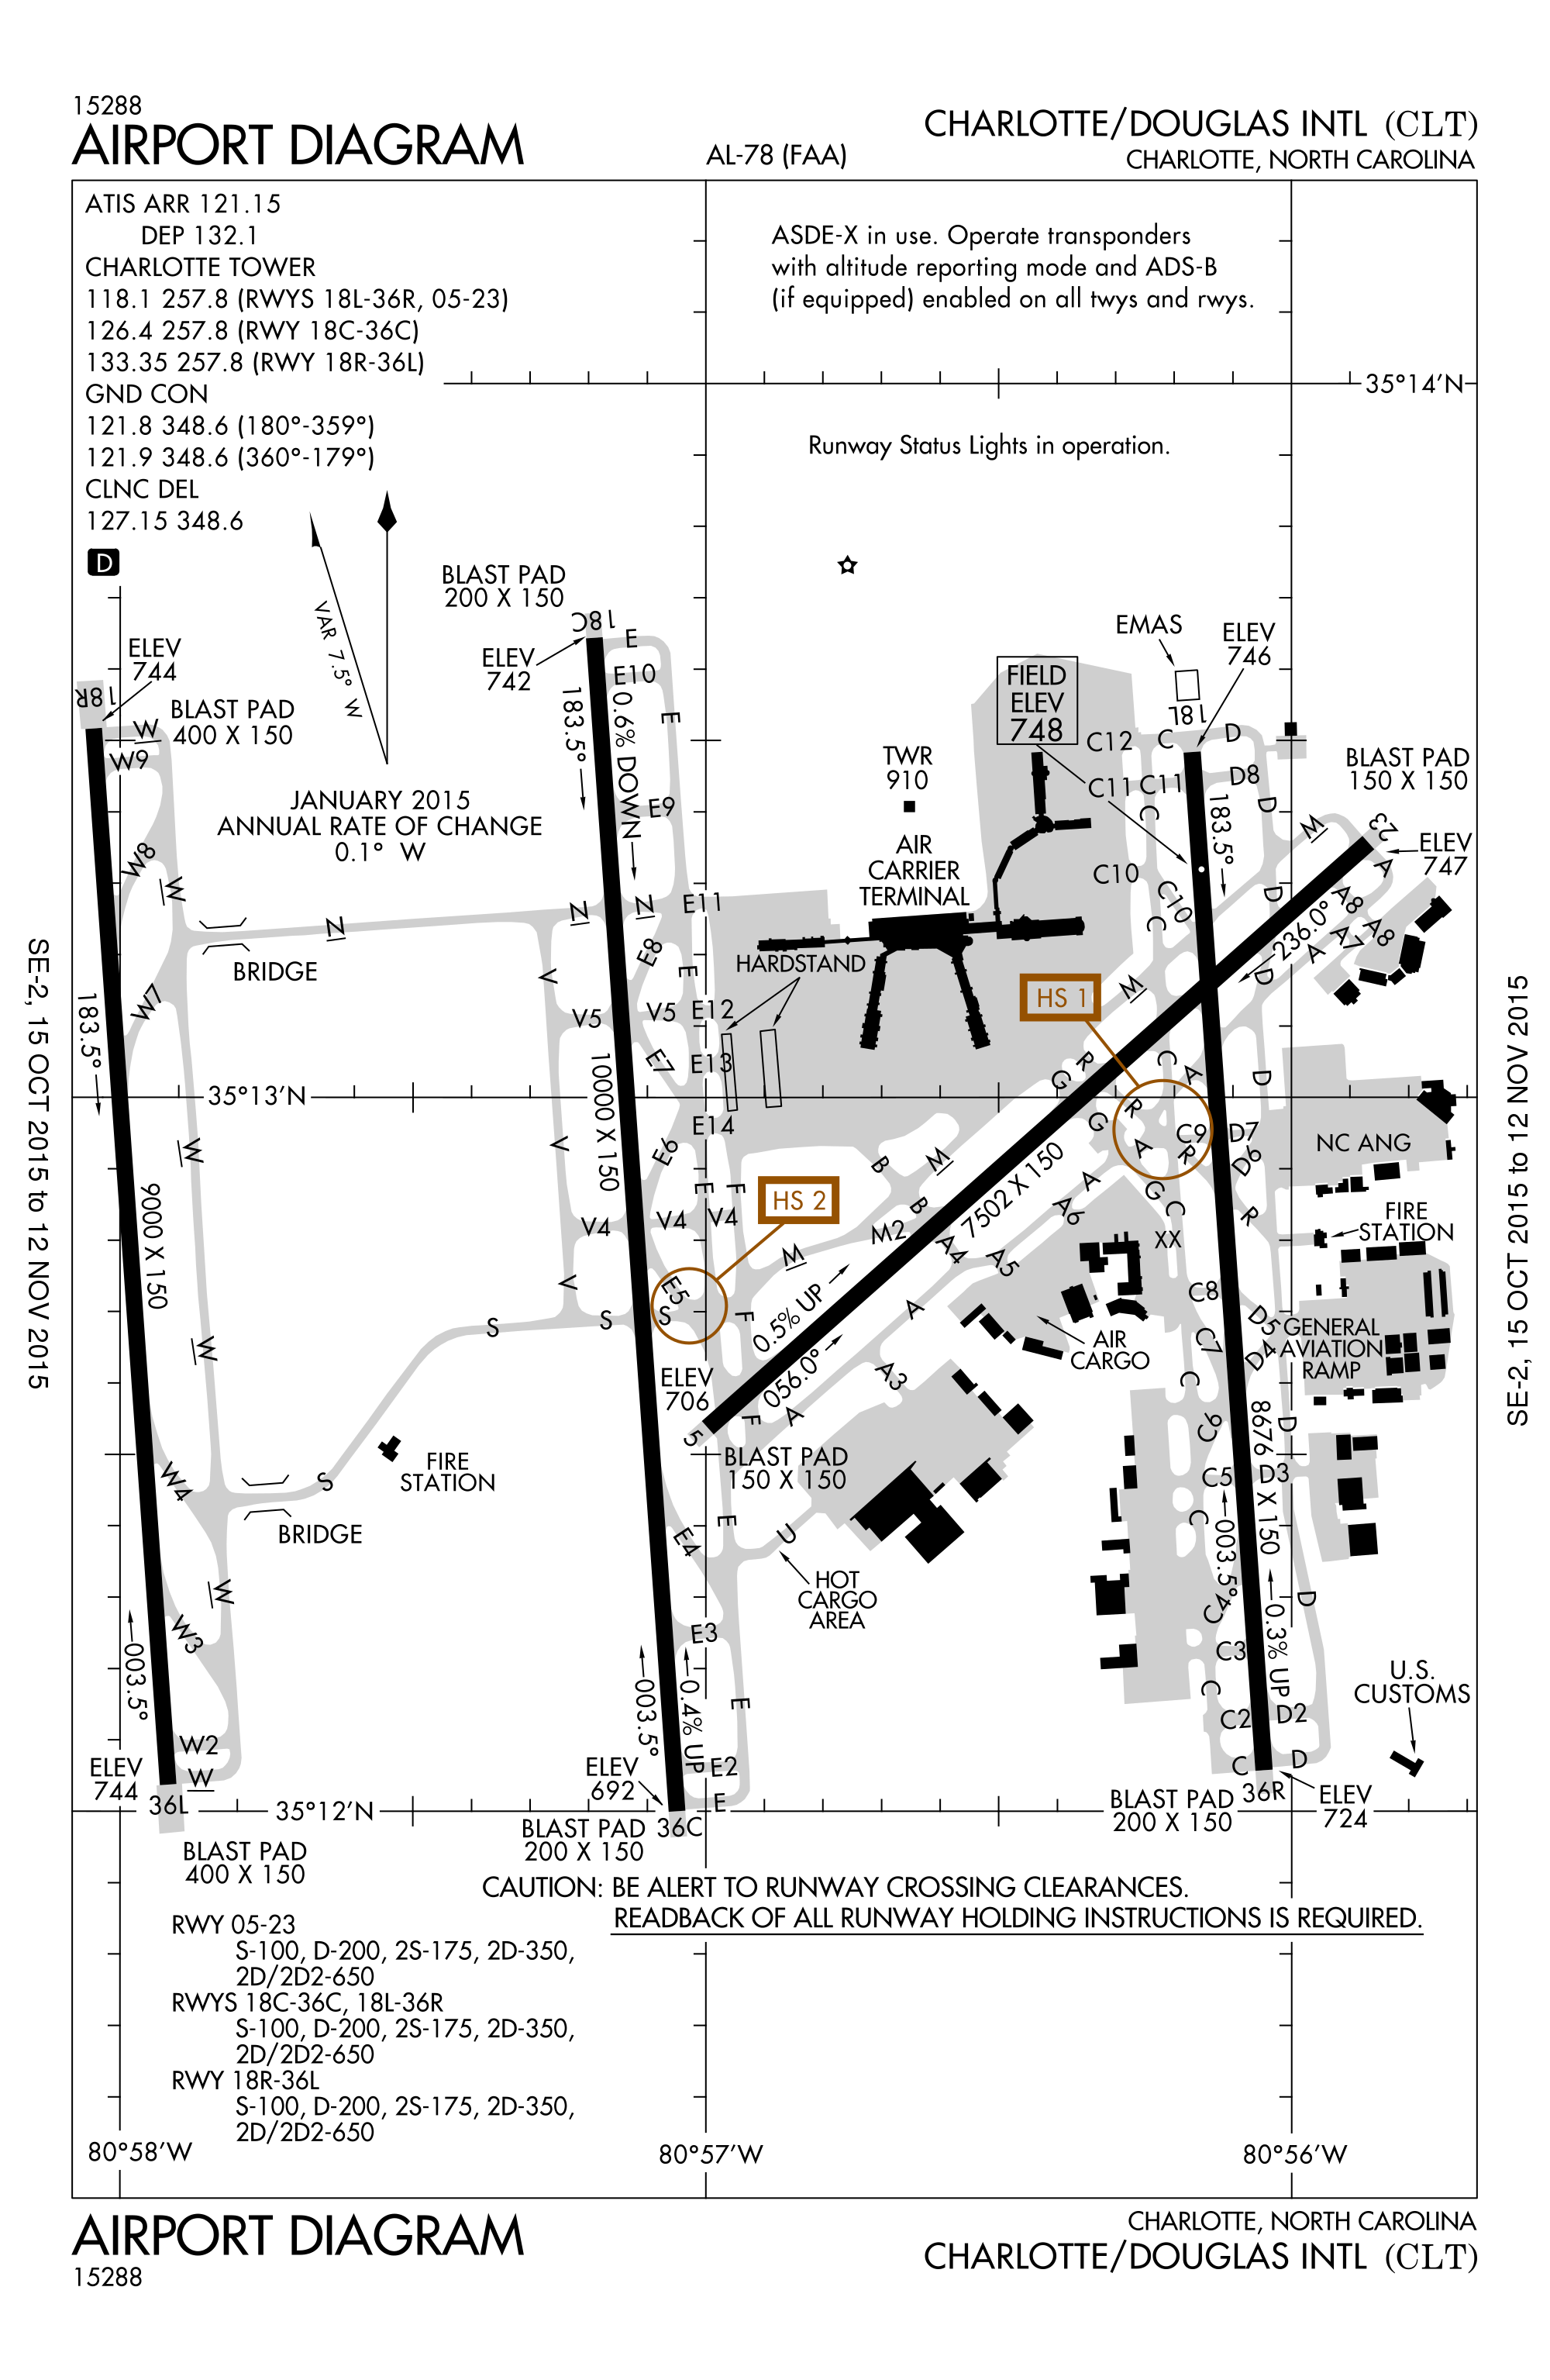 clt airport diagram